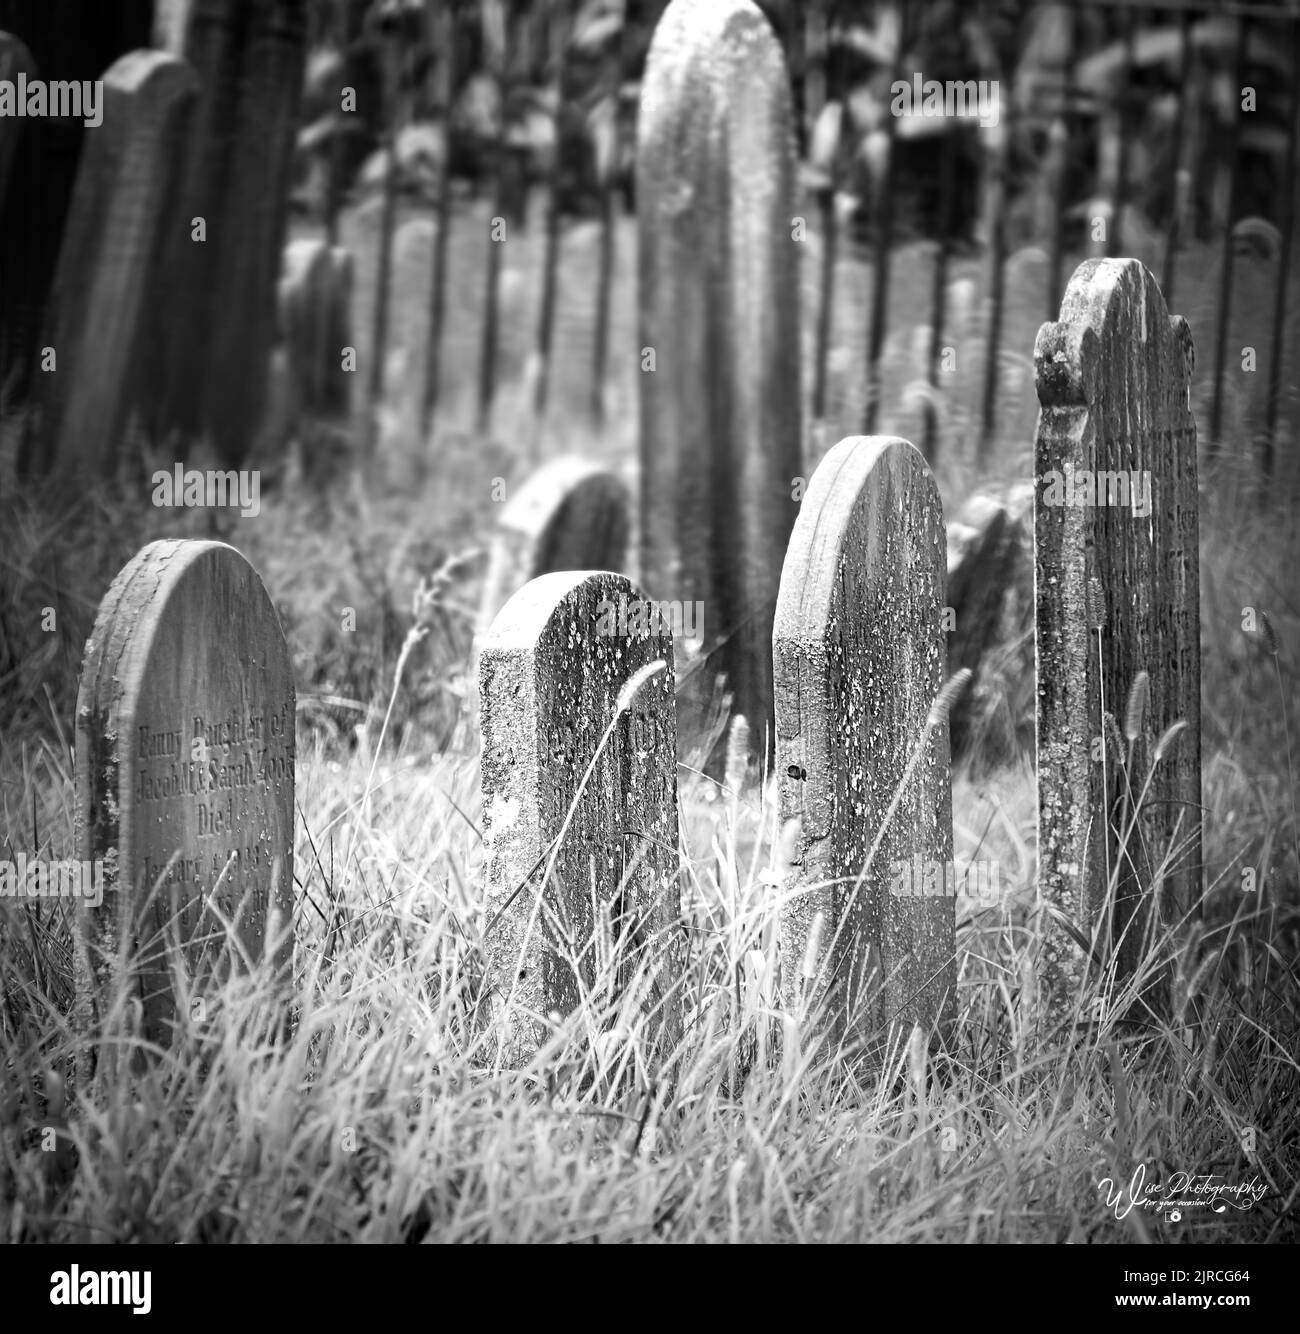 Alternde Grabsteine auf einem alten, einsamen, vergessenen Friedhof mit überwuchertem Gras und gusseisernen Zaunstangen in schwarz-weiß im Frühling, Sommer, Herbst Stockfoto